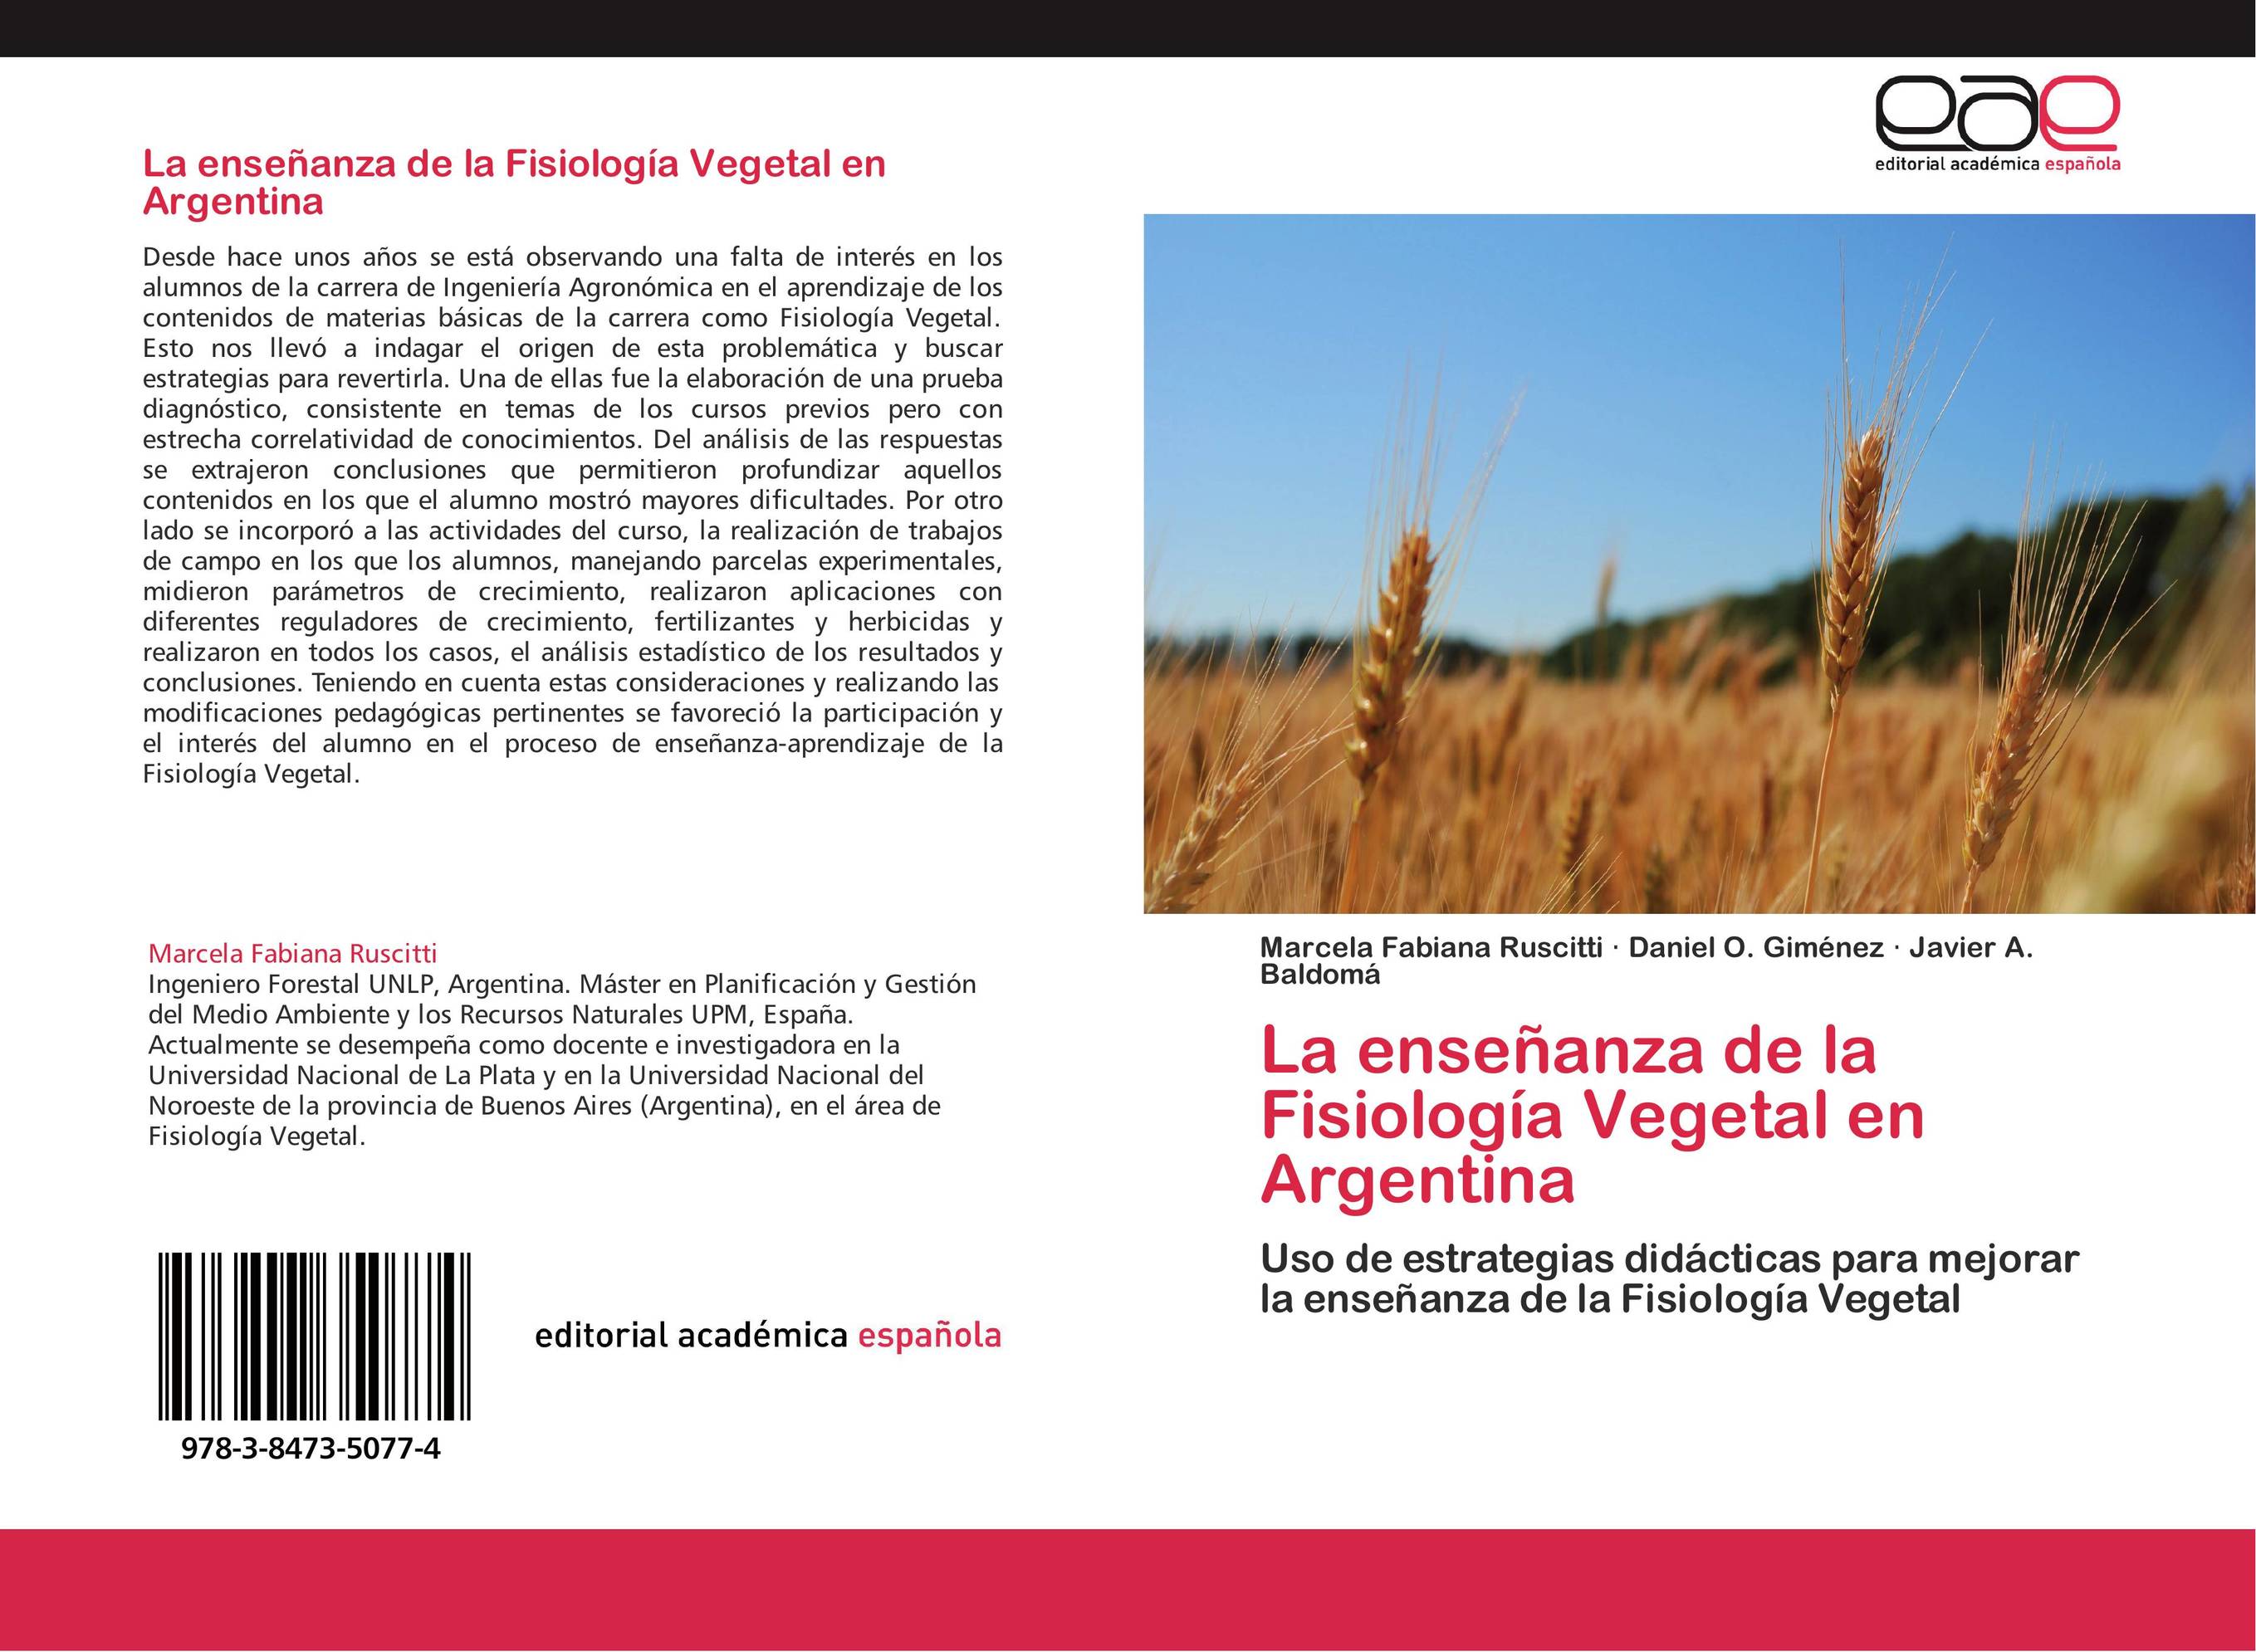 La enseñanza de la Fisiología Vegetal en Argentina